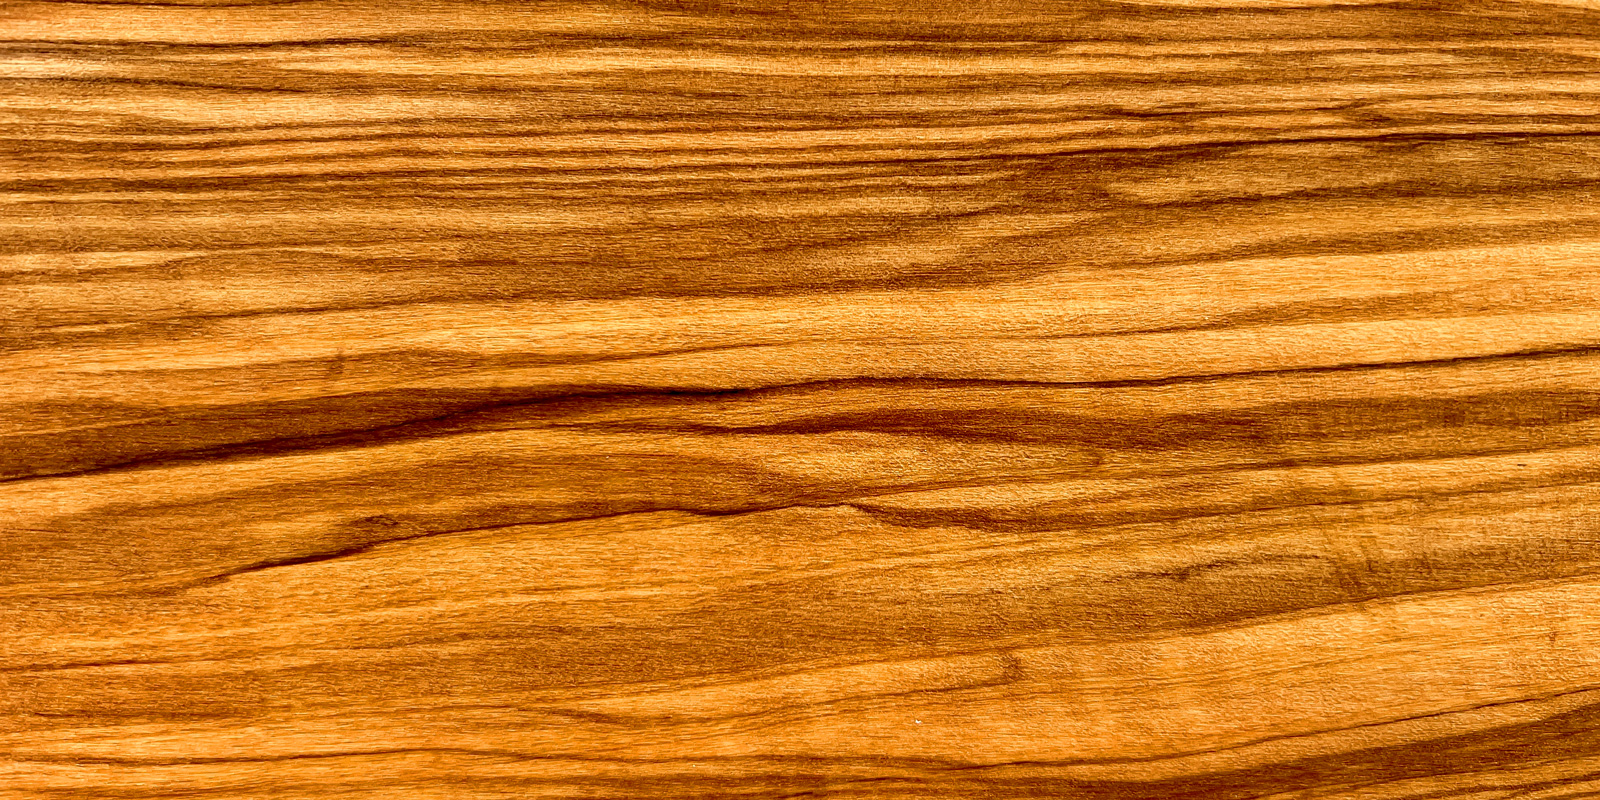 Produkty z drewna oliwnego Przedmioty z pieknie uslojonego drewna oliwnego, ktore nadaja stolowi cieply ton.